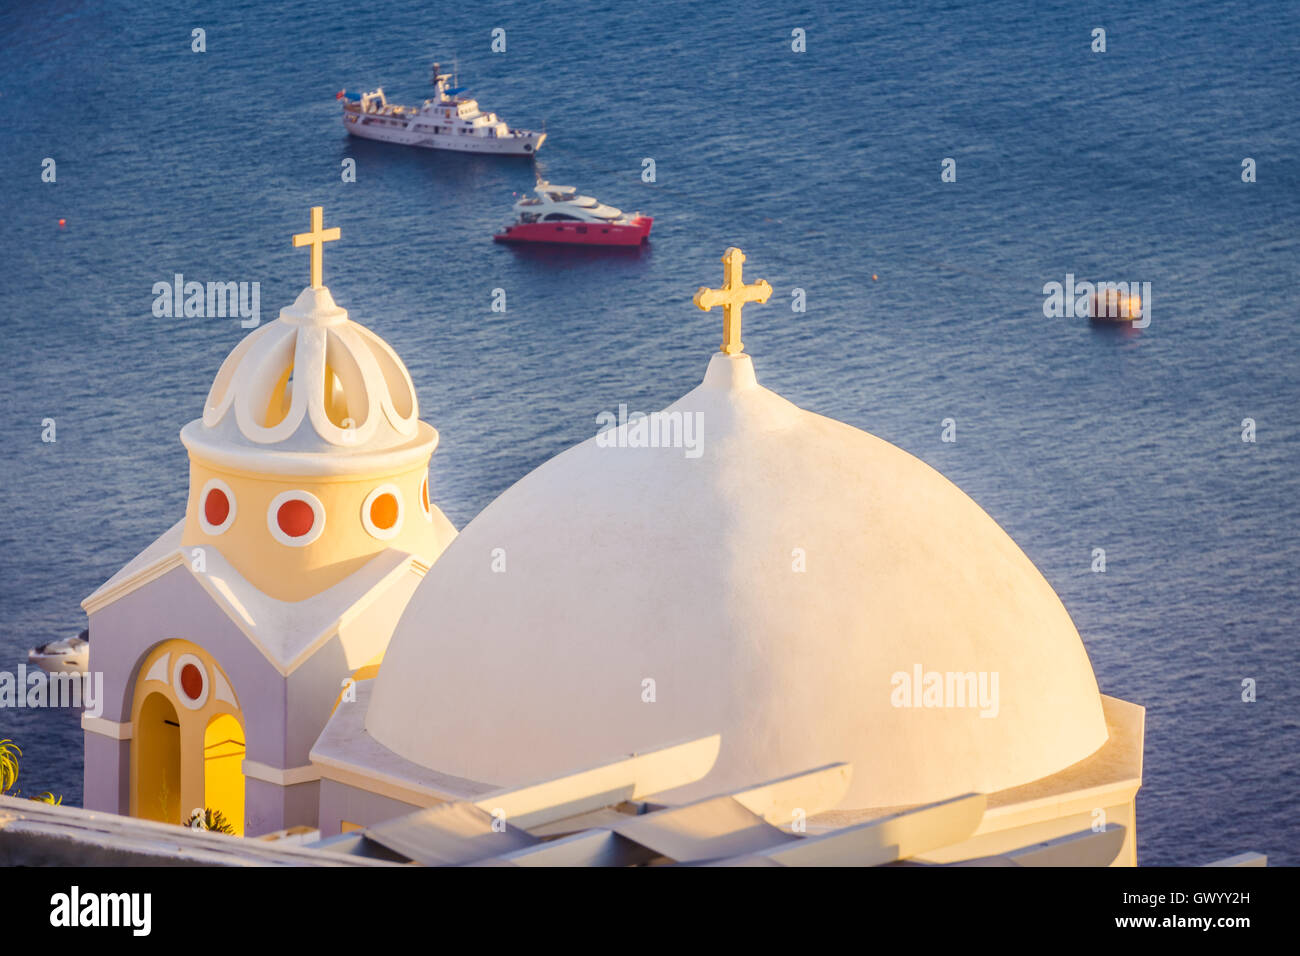 Église iconique de Santorini, Grèce. Santorin est un ancien volcan situé au milieu de la mer Méditerranée, entouré b Banque D'Images